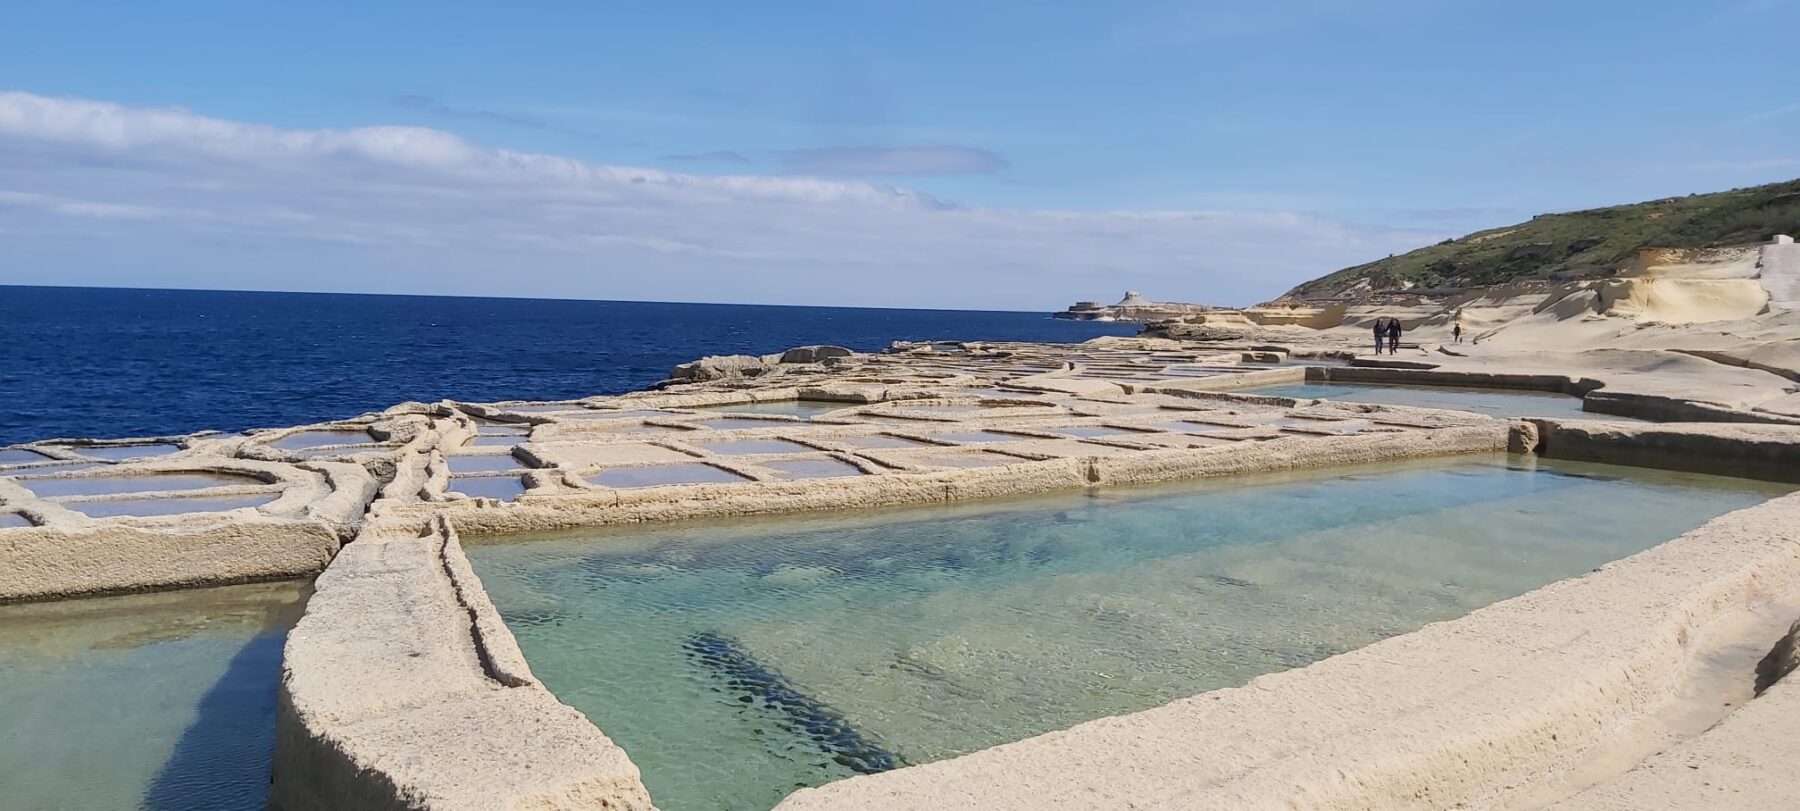 Zoutvlakten in Malta met de zee als achtergrond